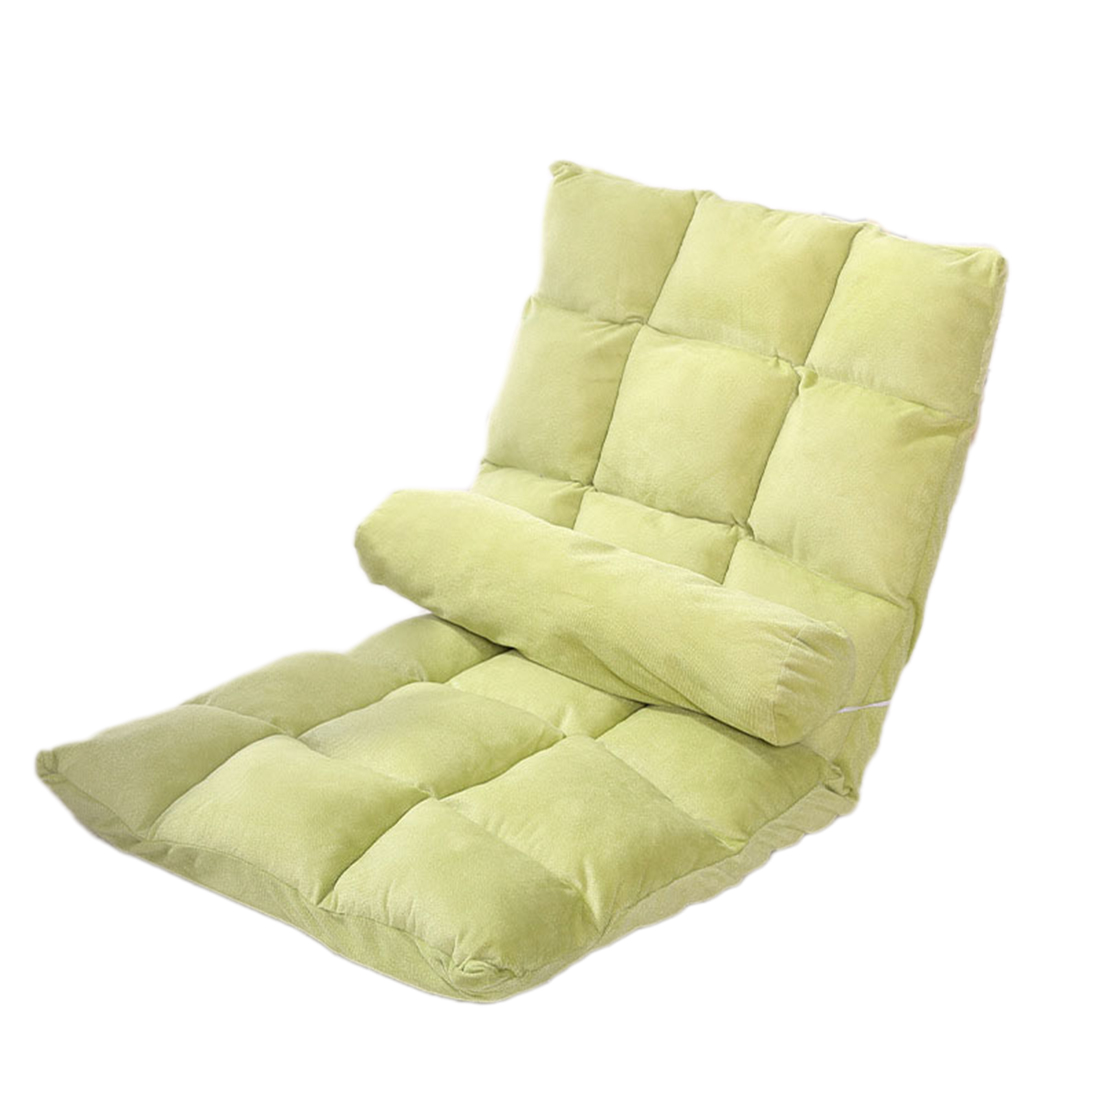 18 plaid green ( send waist pillow )